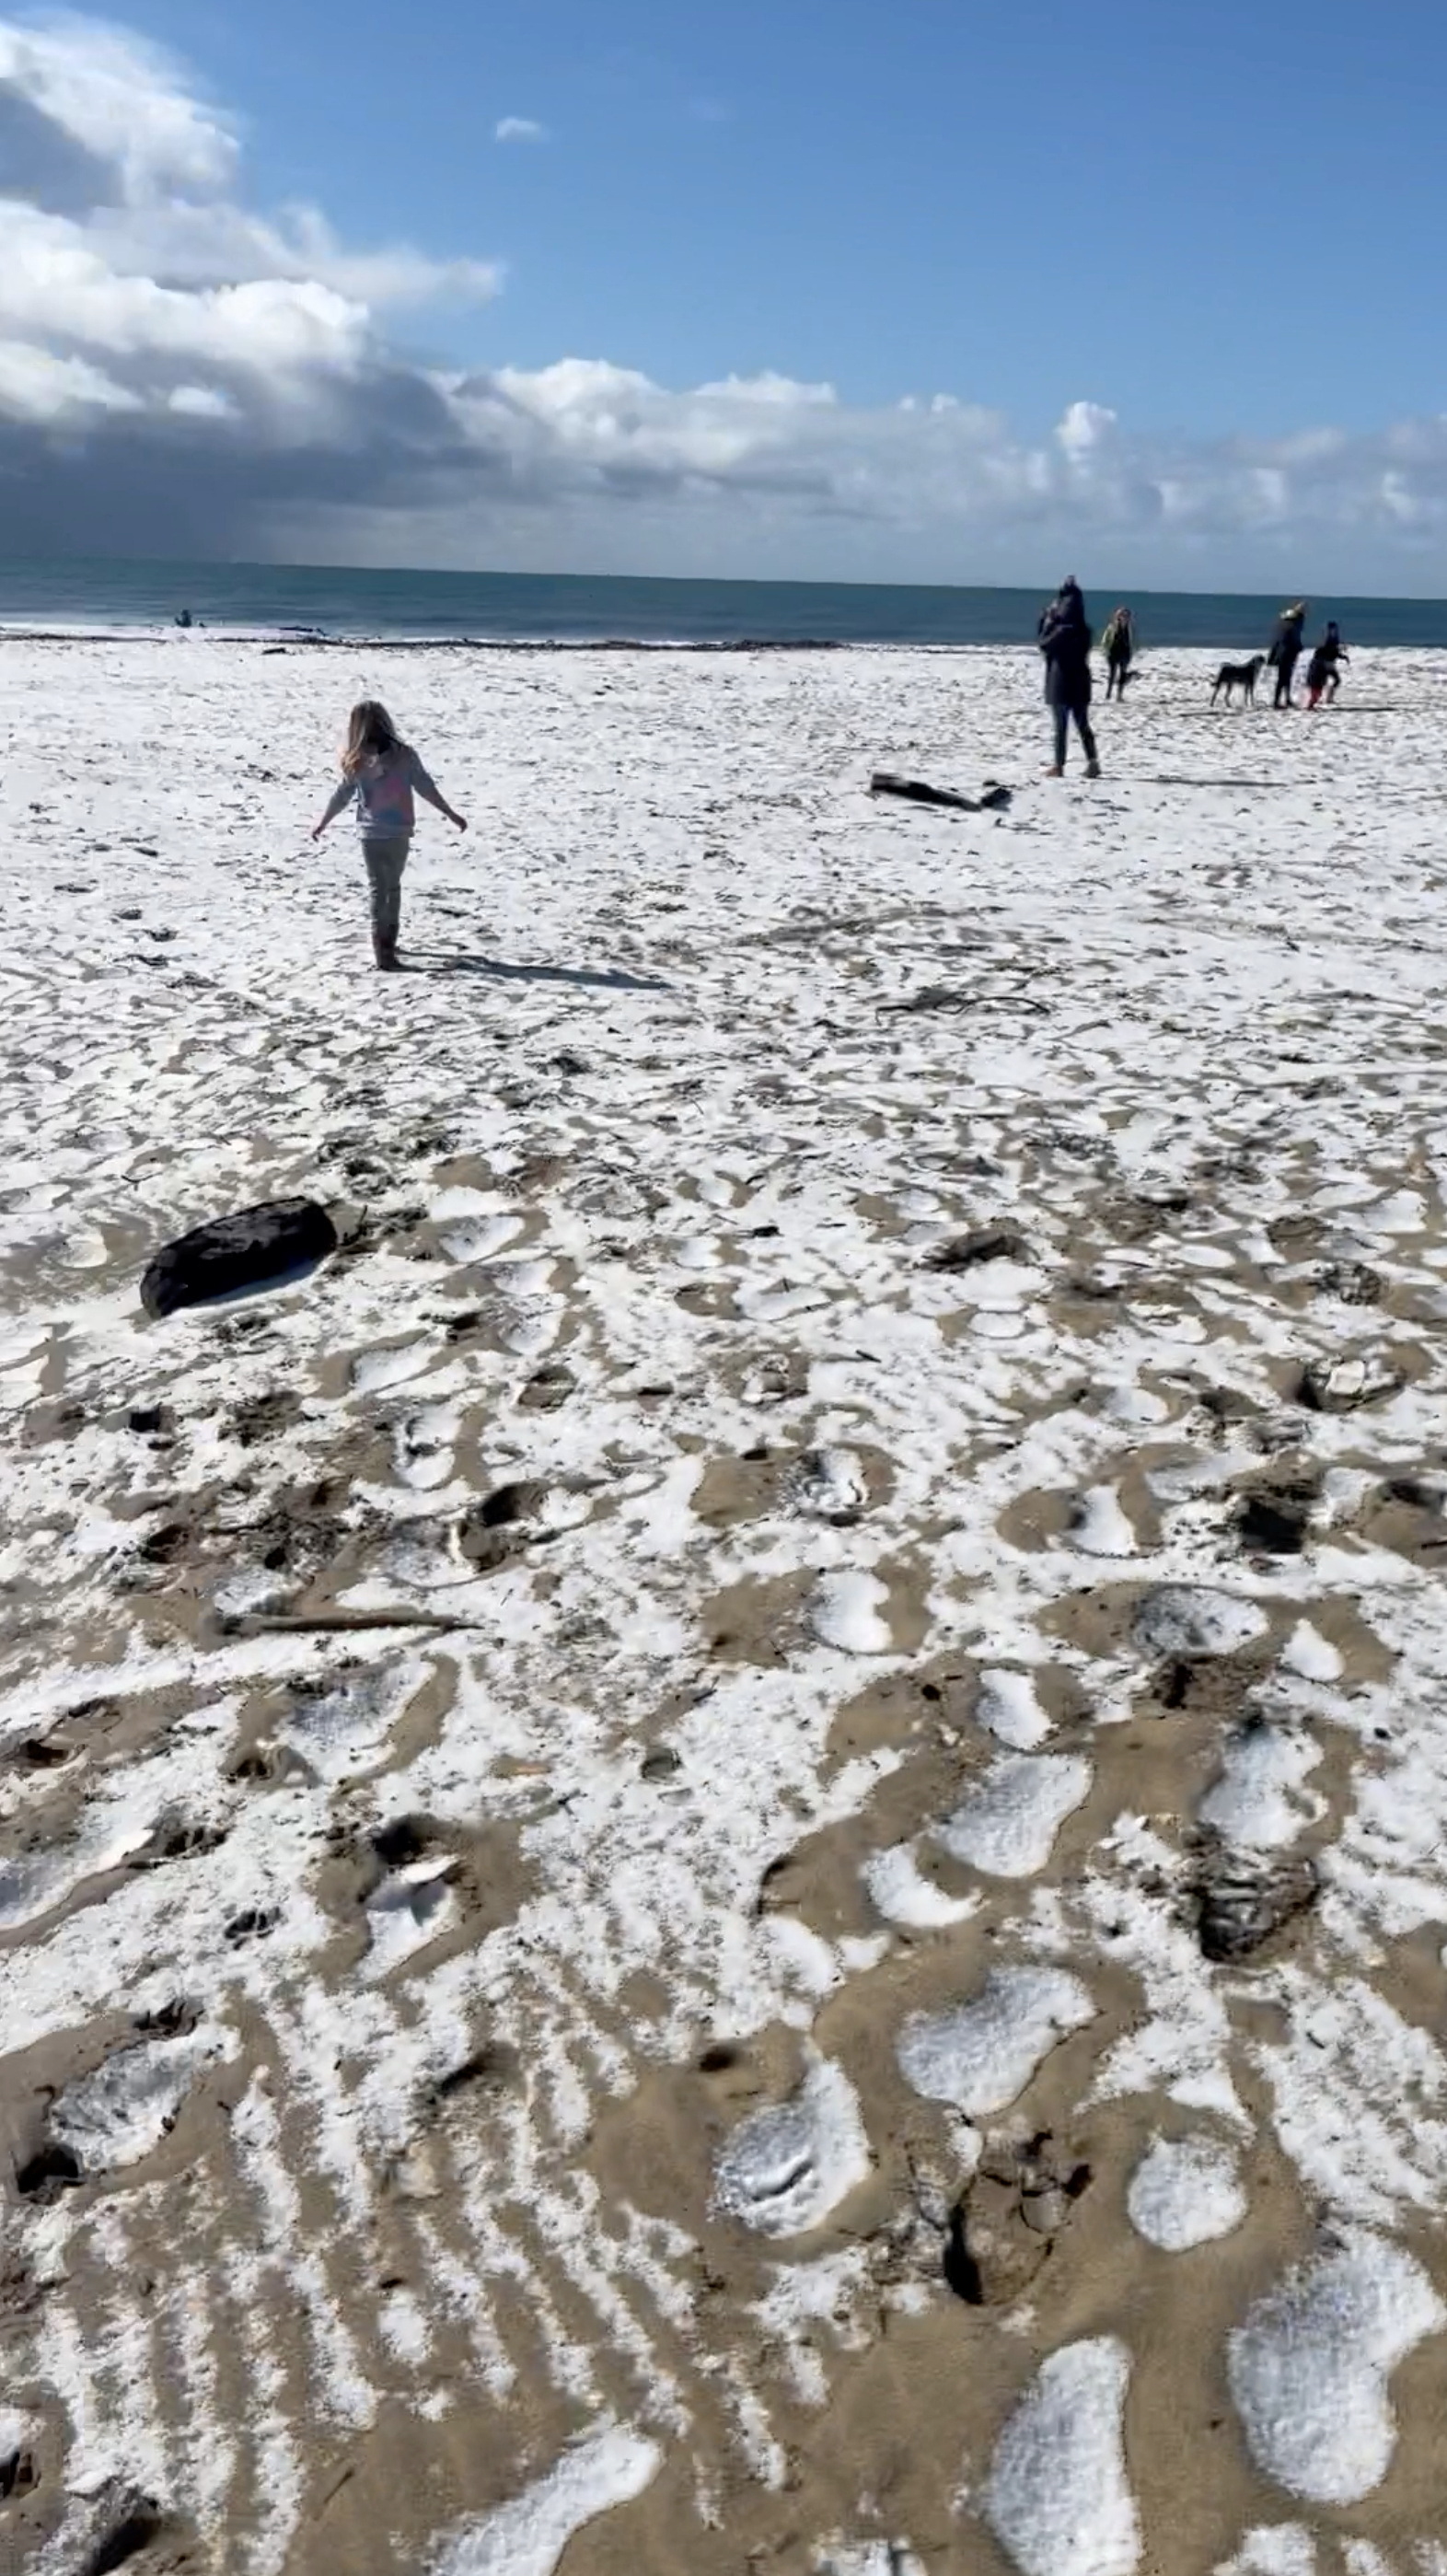 La gente camina en una playa cubierta de graupel, en Santa Cruz (KAREN KRENIS/via REUTERS)